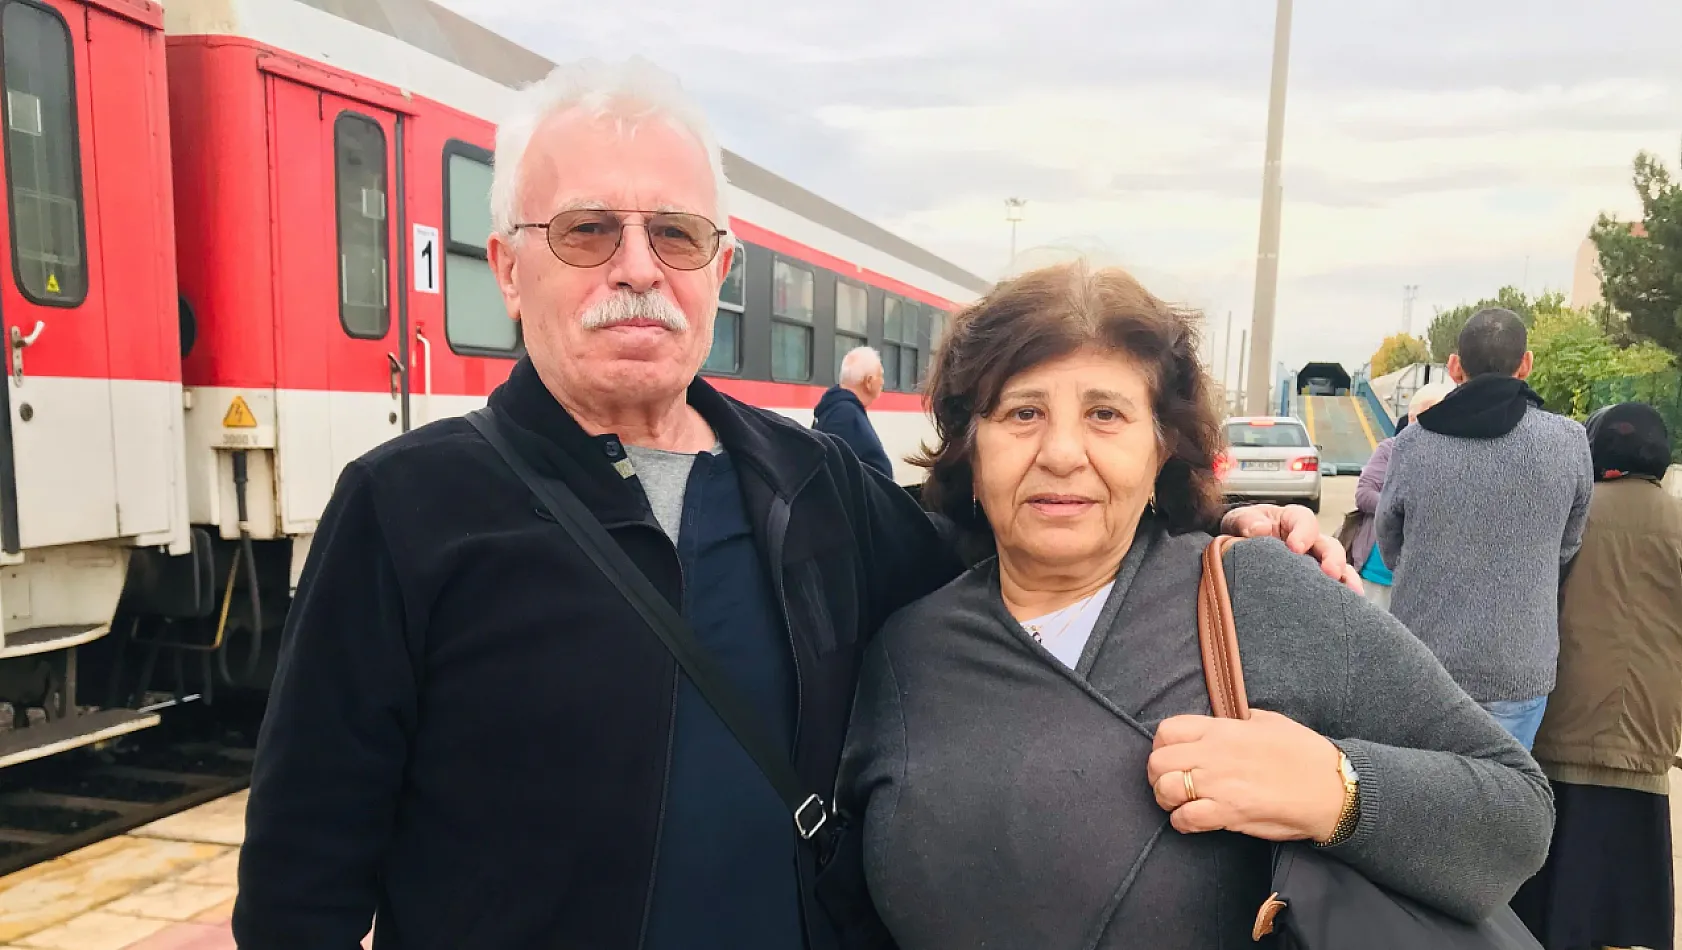 Kayseri'yi de gezen gurbetçi: Bizi hor görüyorlar!